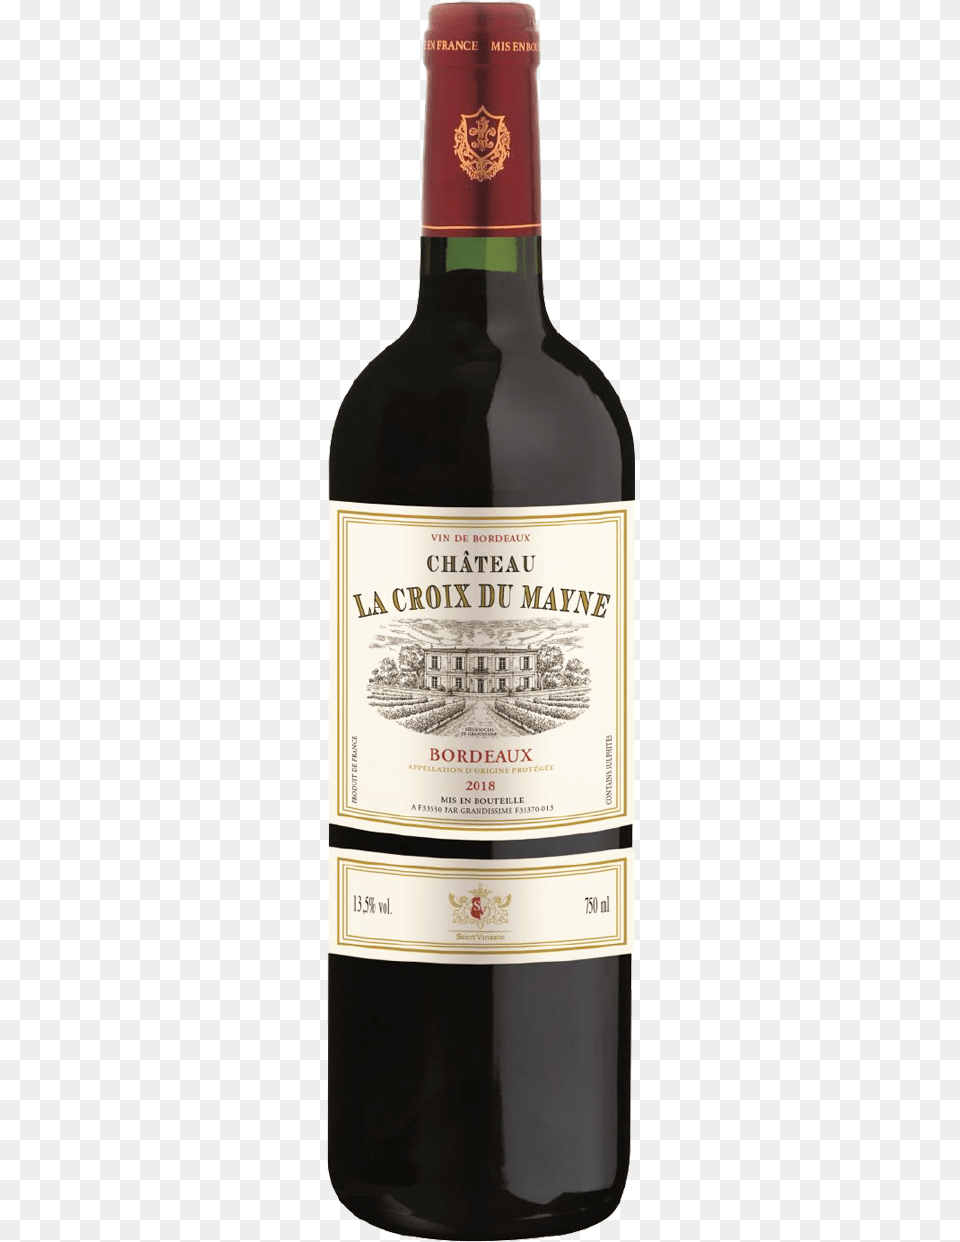 Chateau La Croix Du Mayne Bordeaux 2018 75cl Antica Cabernet Sauvignon 2015, Bottle, Alcohol, Beverage, Liquor Free Transparent Png